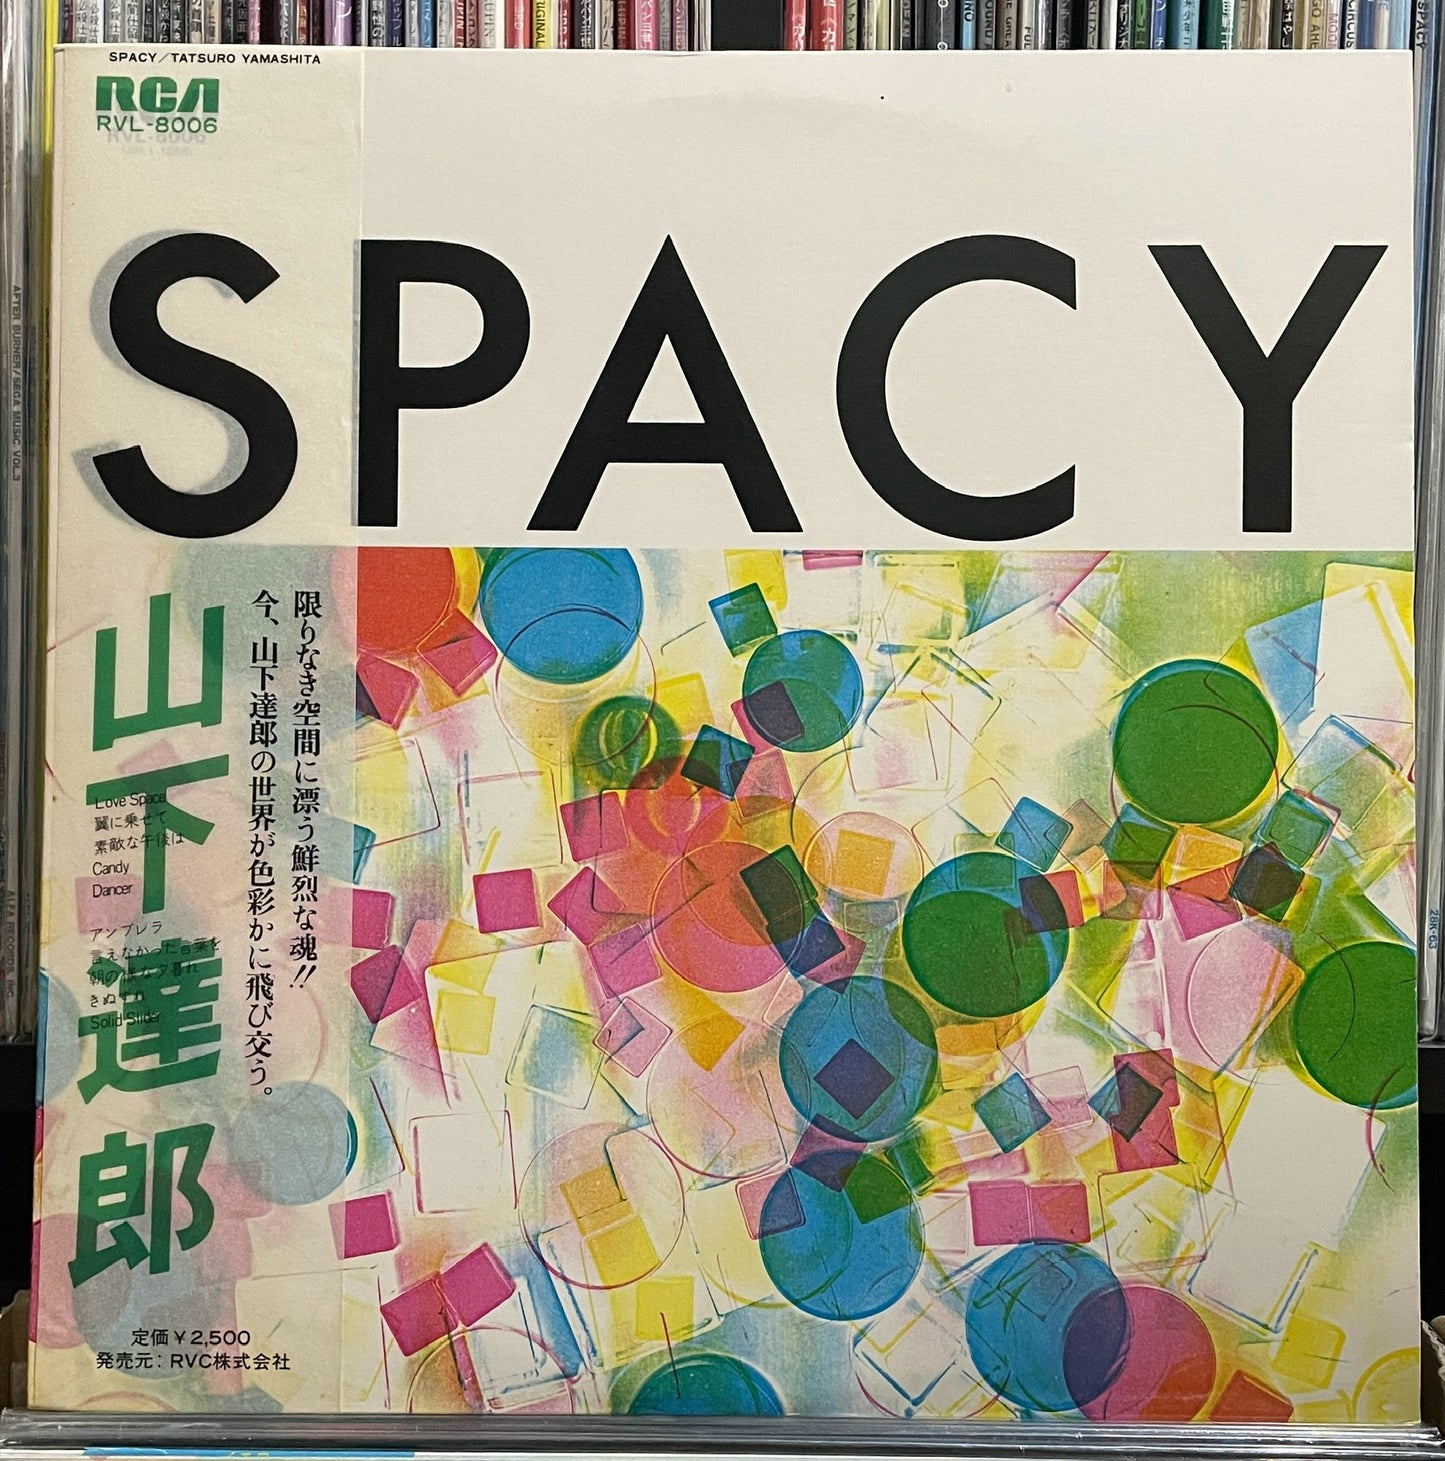 Tatsuro Yamashita “Spacy” (1977)